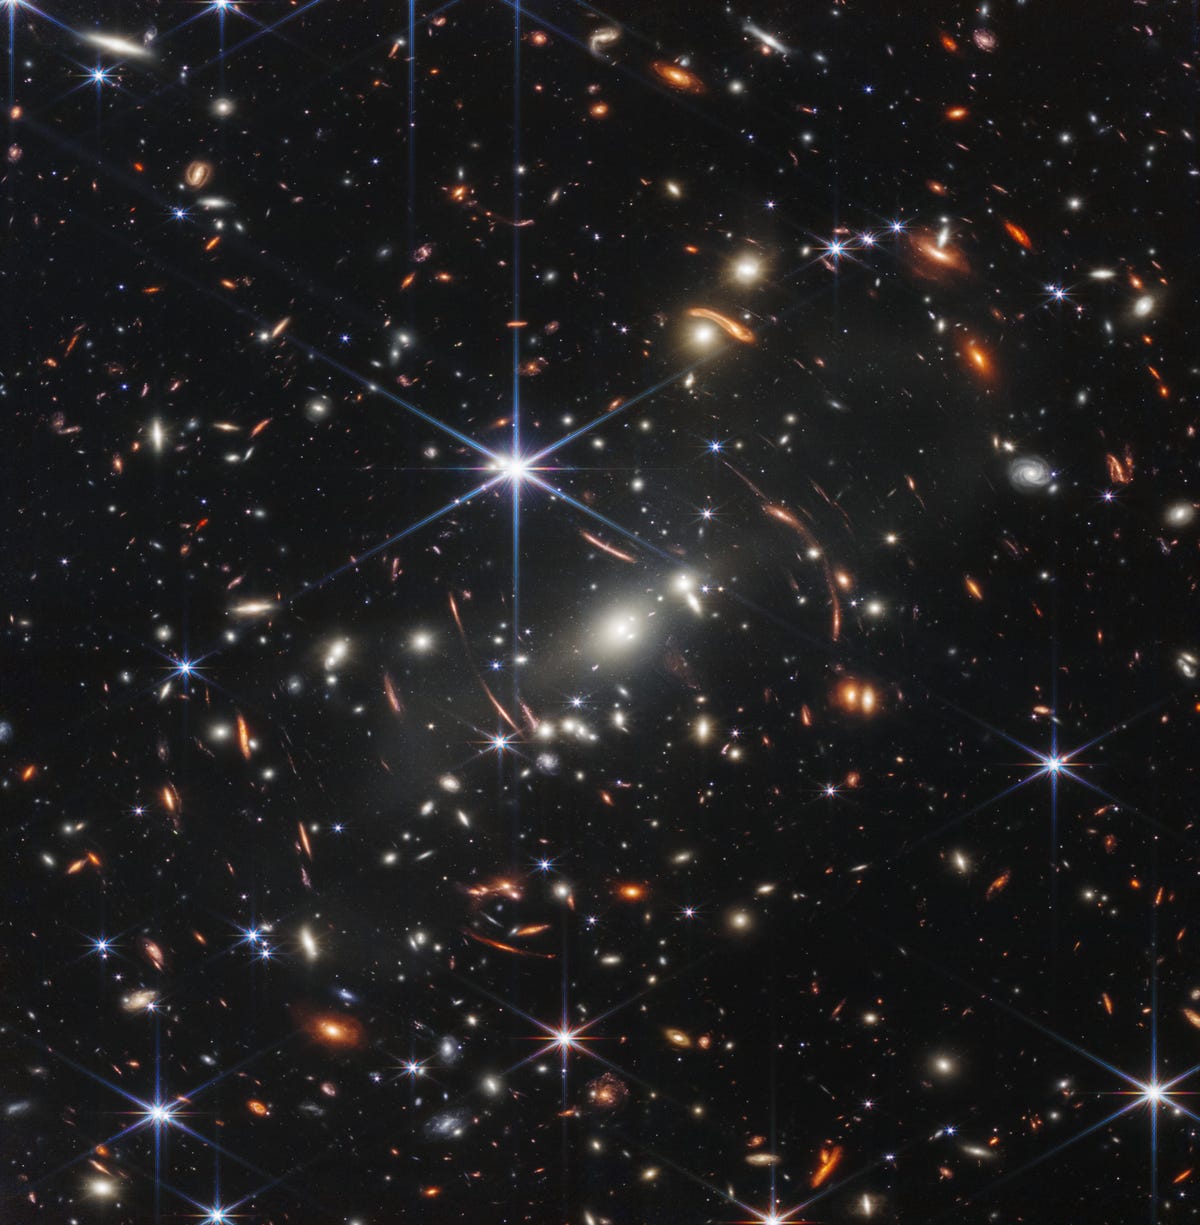 Un champ de milliers de galaxies contre l'obscurité de l'espace avec une grande étoile bleue centrale à six branches.